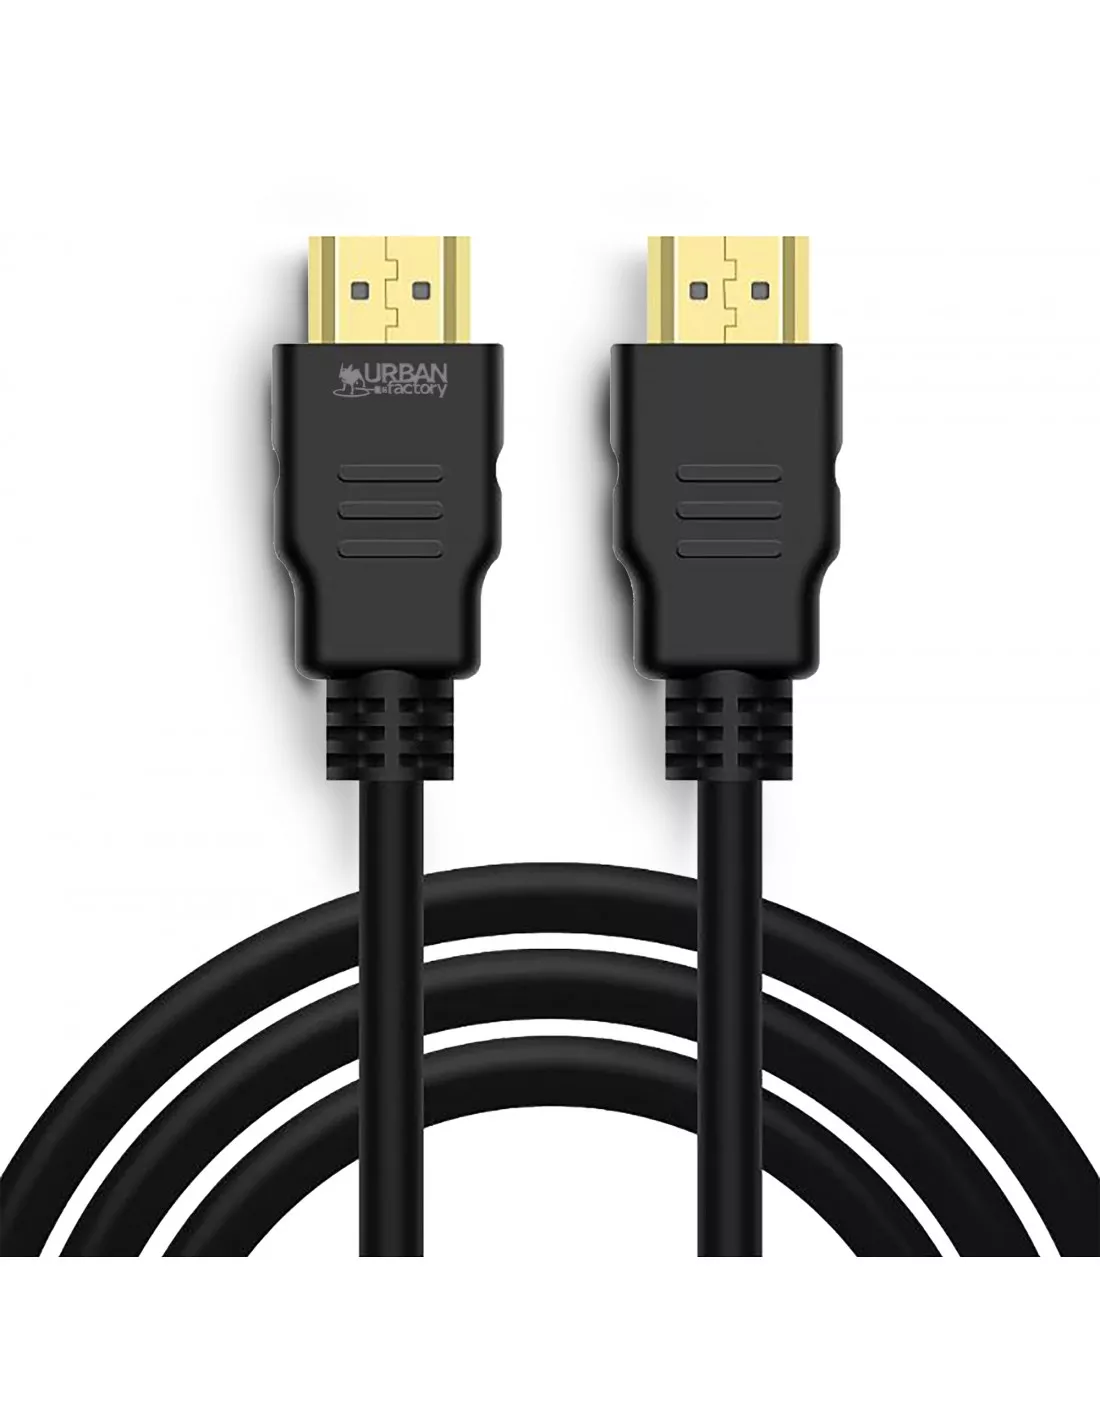 Achat URBAN FACTORY HDMI to HDMI Cable 4K 1.5m et autres produits de la marque Urban Factory